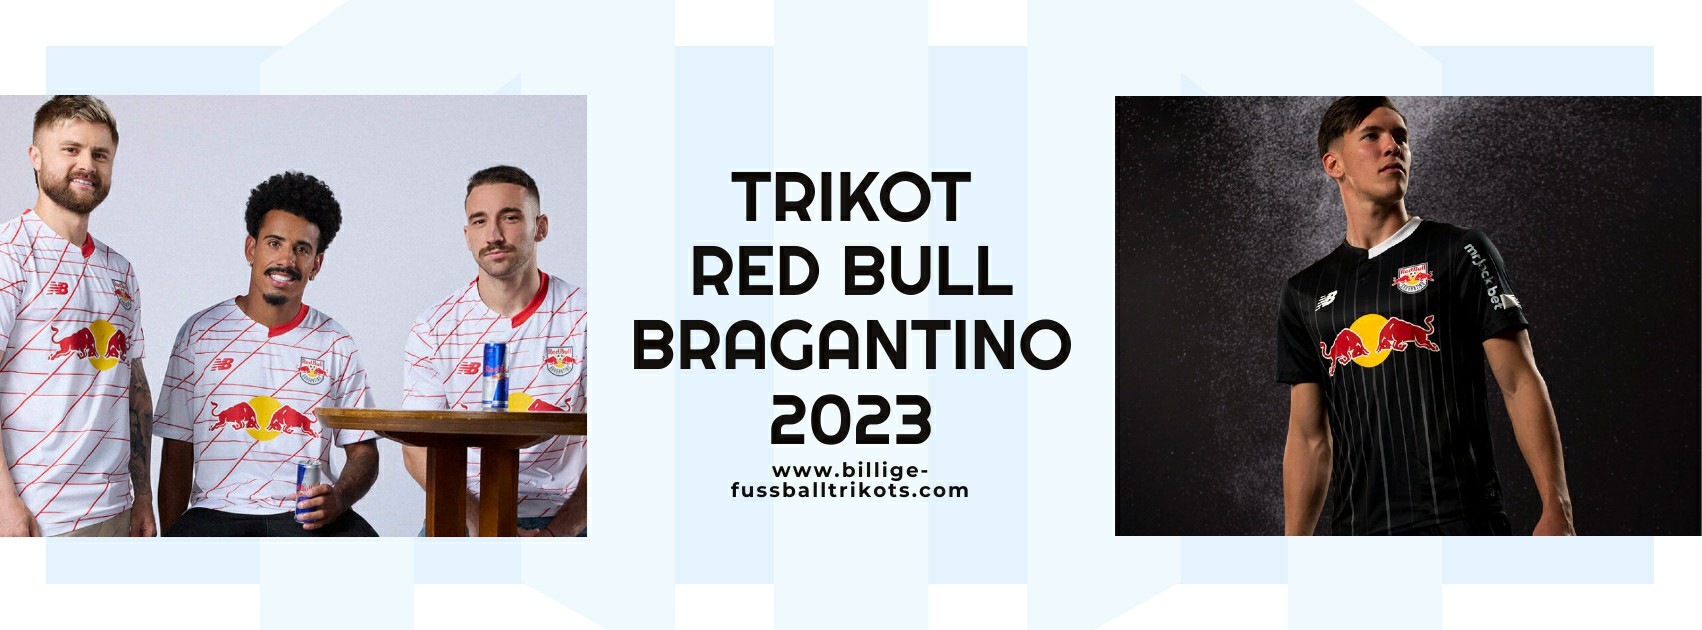 Red Bull Bragantino Trikot 2023-2024